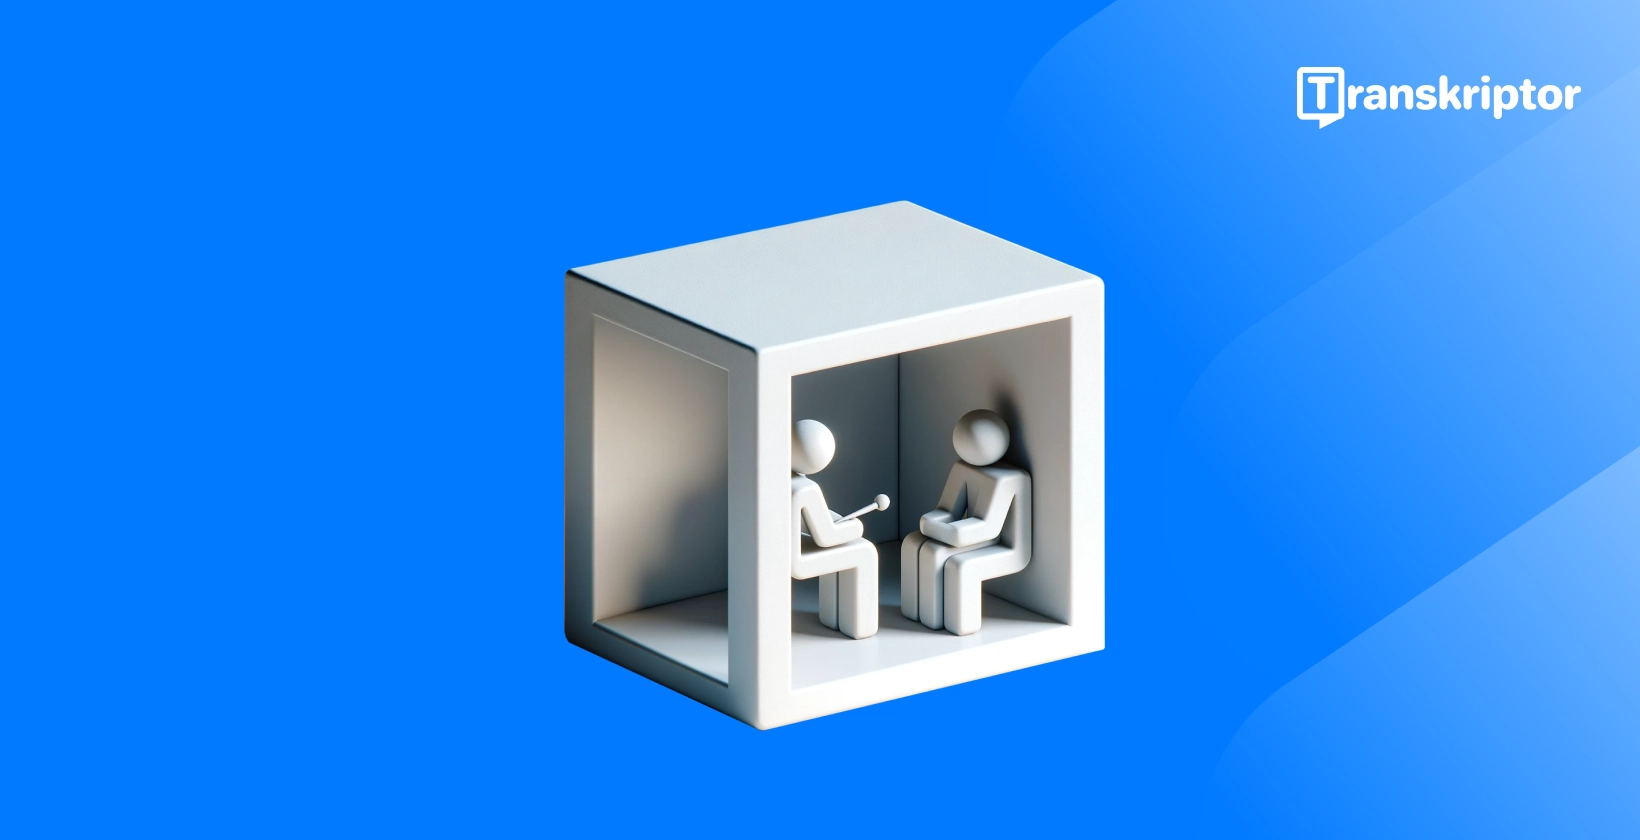 Transcrever entrevistas retratadas por figuras 3D em uma caixa, destacando o processo de entrevista para maior clareza.